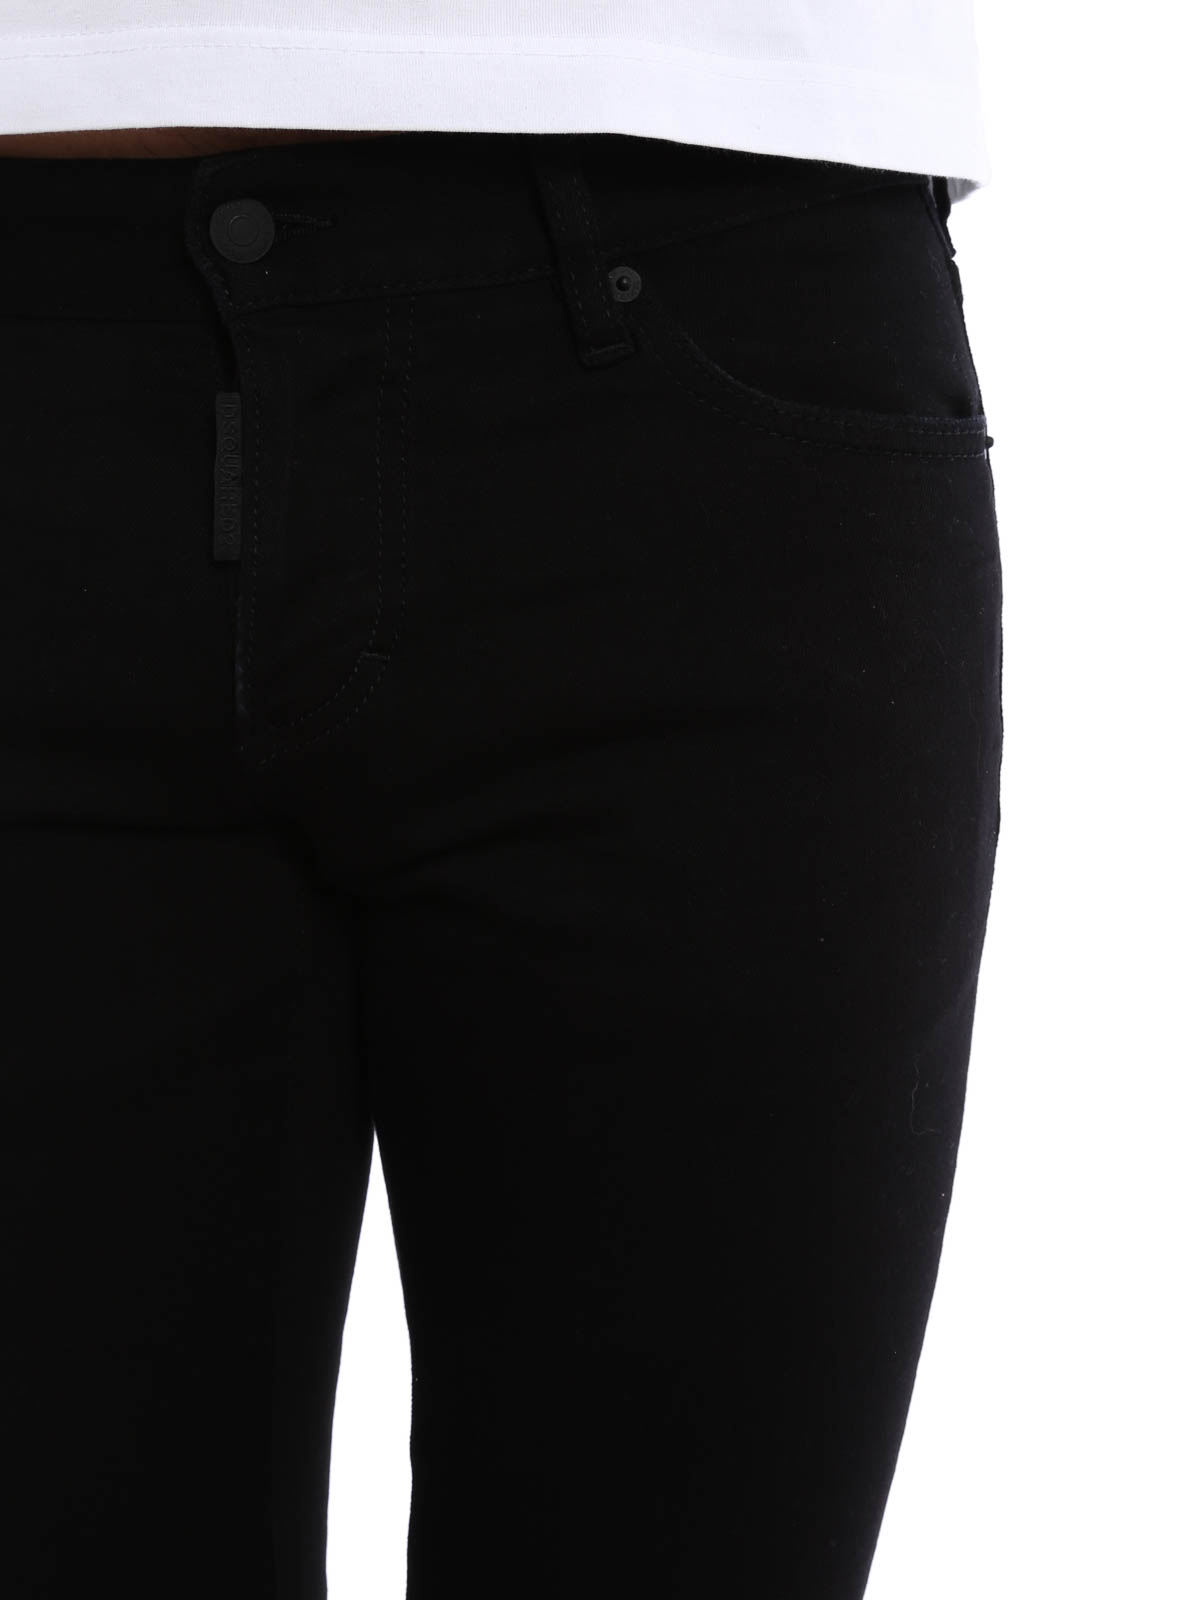 dsquared2 clement jeans black